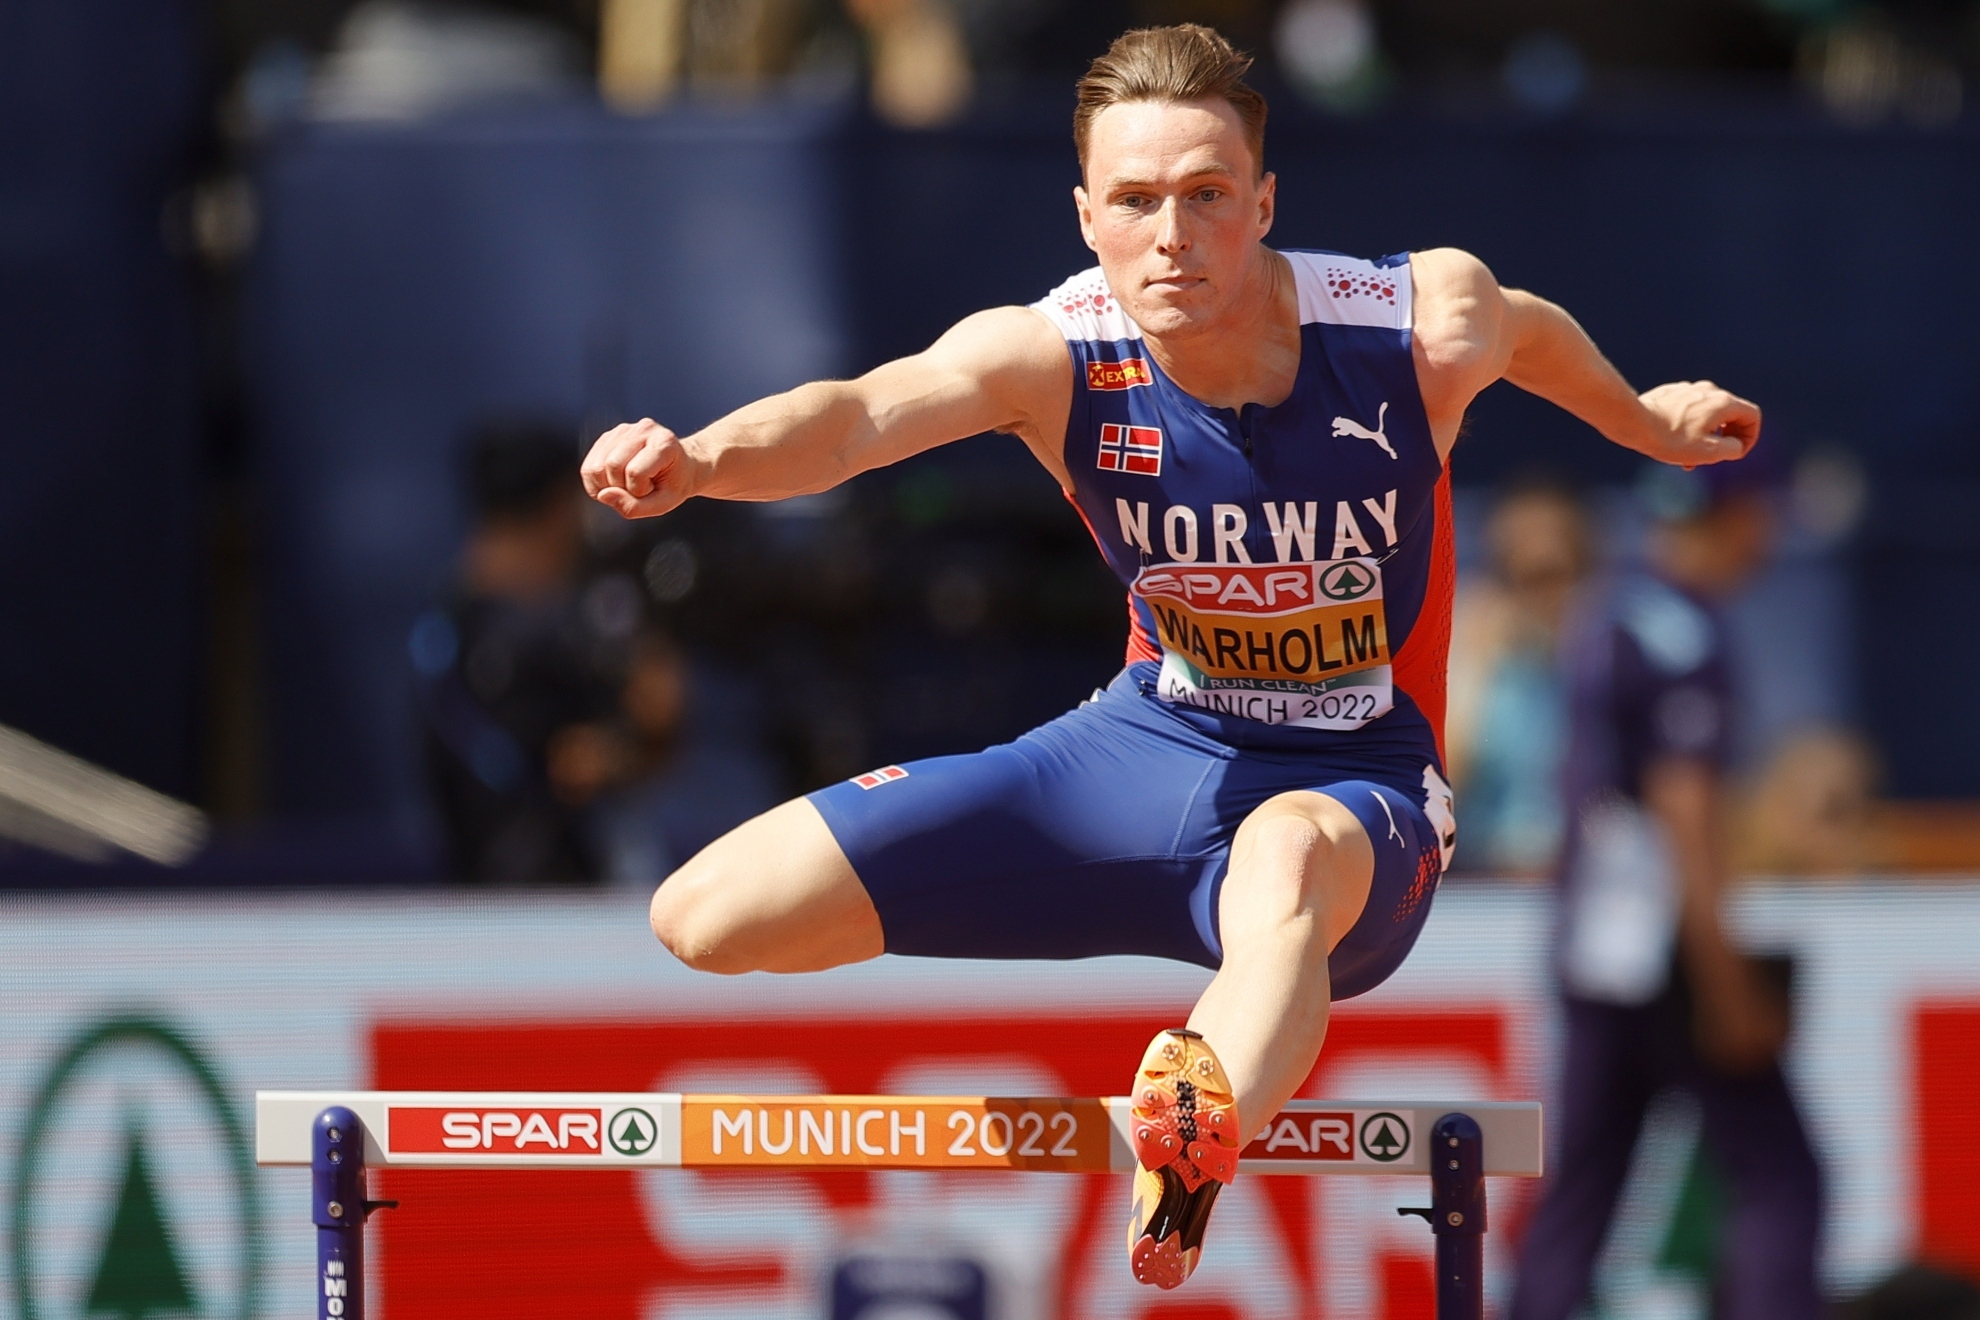 Warholm 'vuelve' a reinar en los 400 metros vallas con el oro europeo